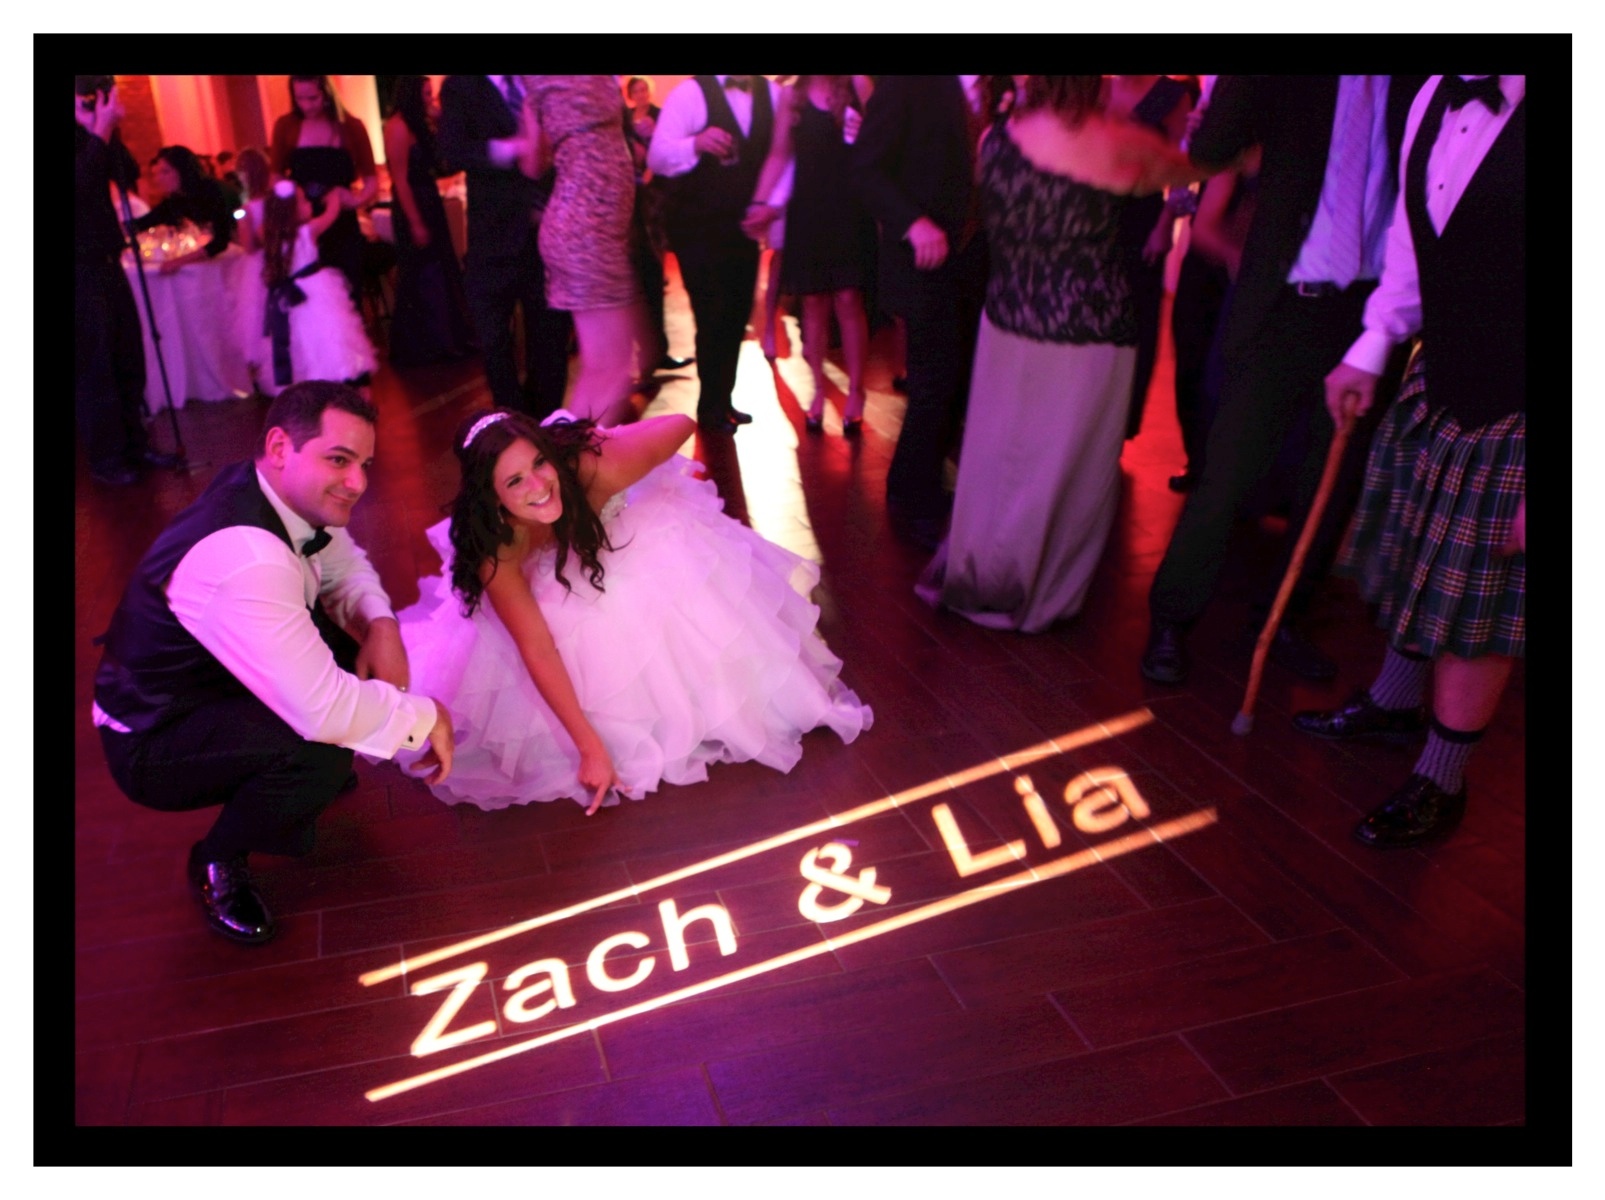 Zach & Lia Reception! (DJ)